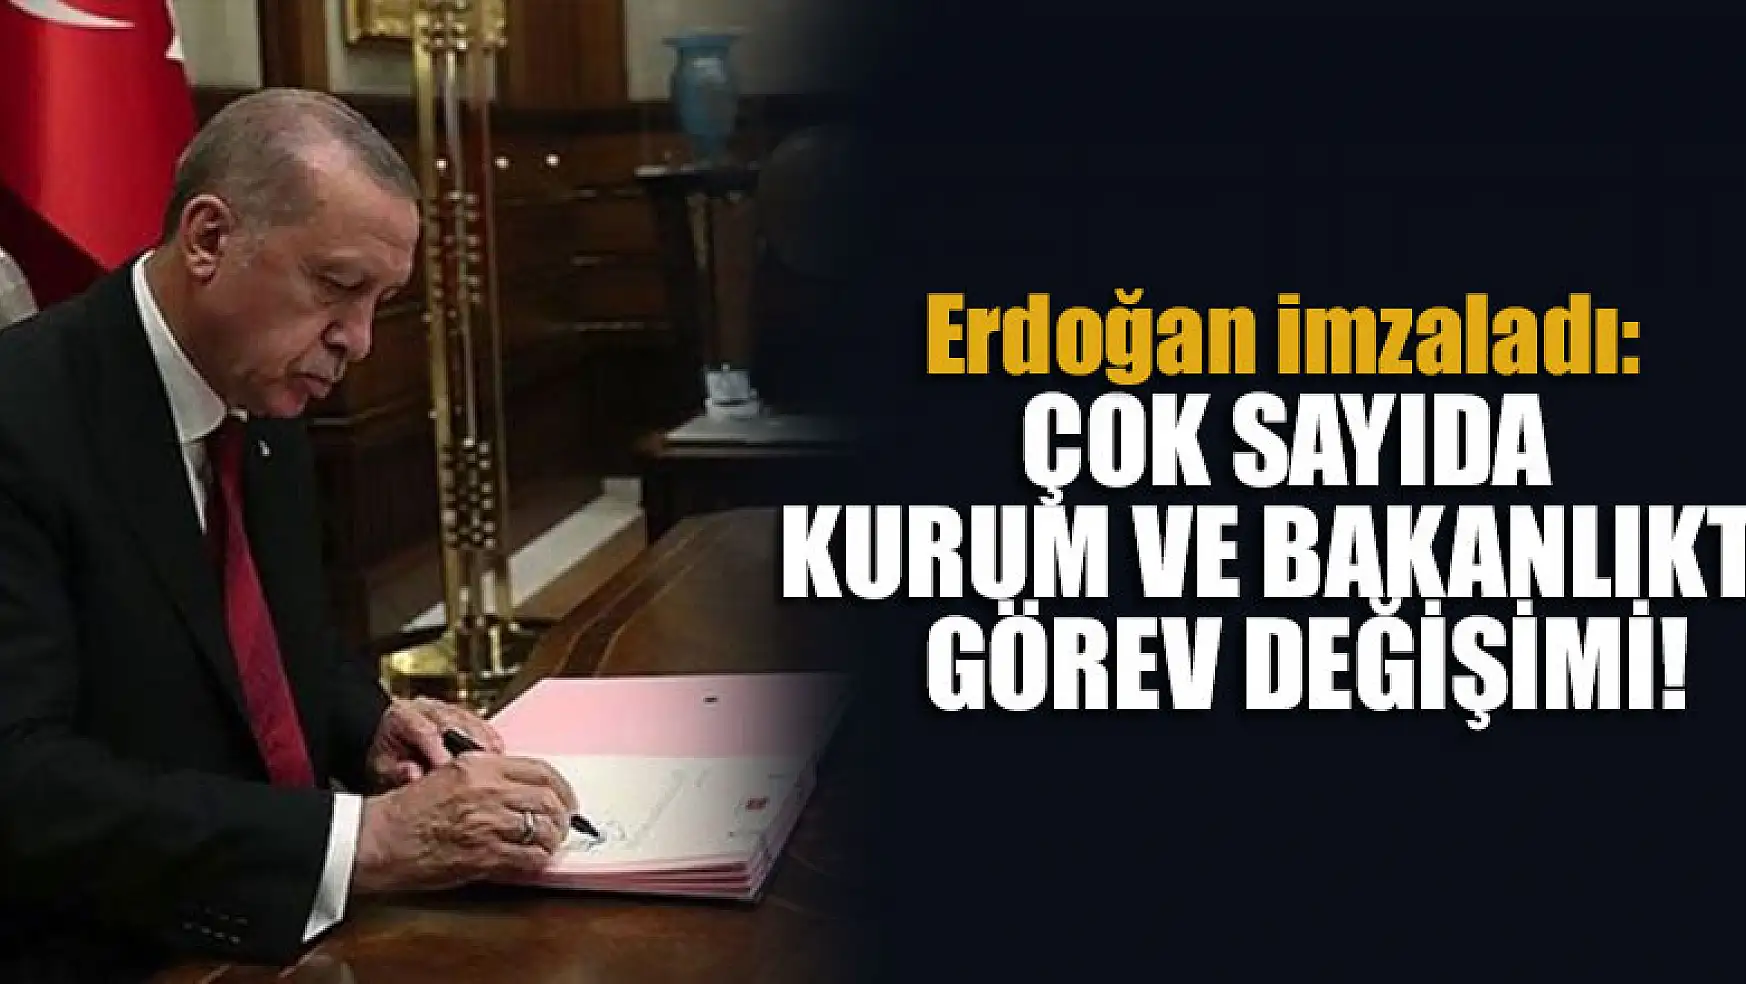 Erdoğan imzaladı: Çok sayıda kurum ve bakanlıkta görev değişimi